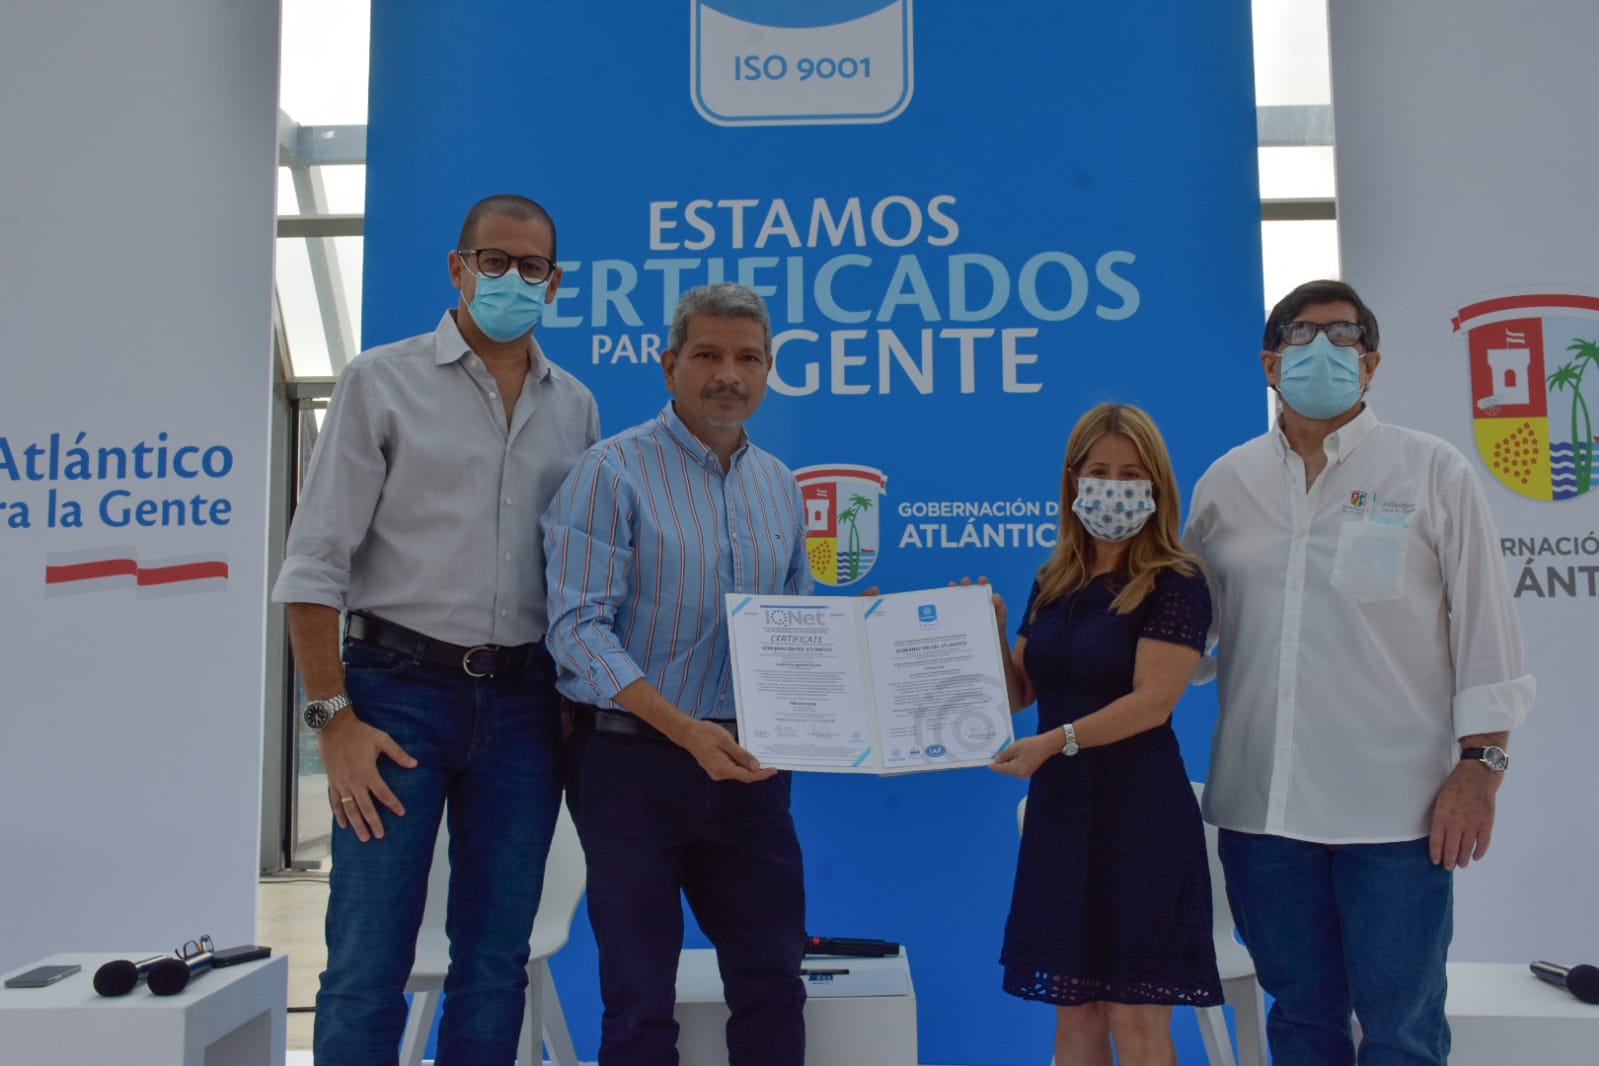 Icontec renueva por tres años el certificado de calidad de la Gobernación del Atlántico – @Gobatlantico